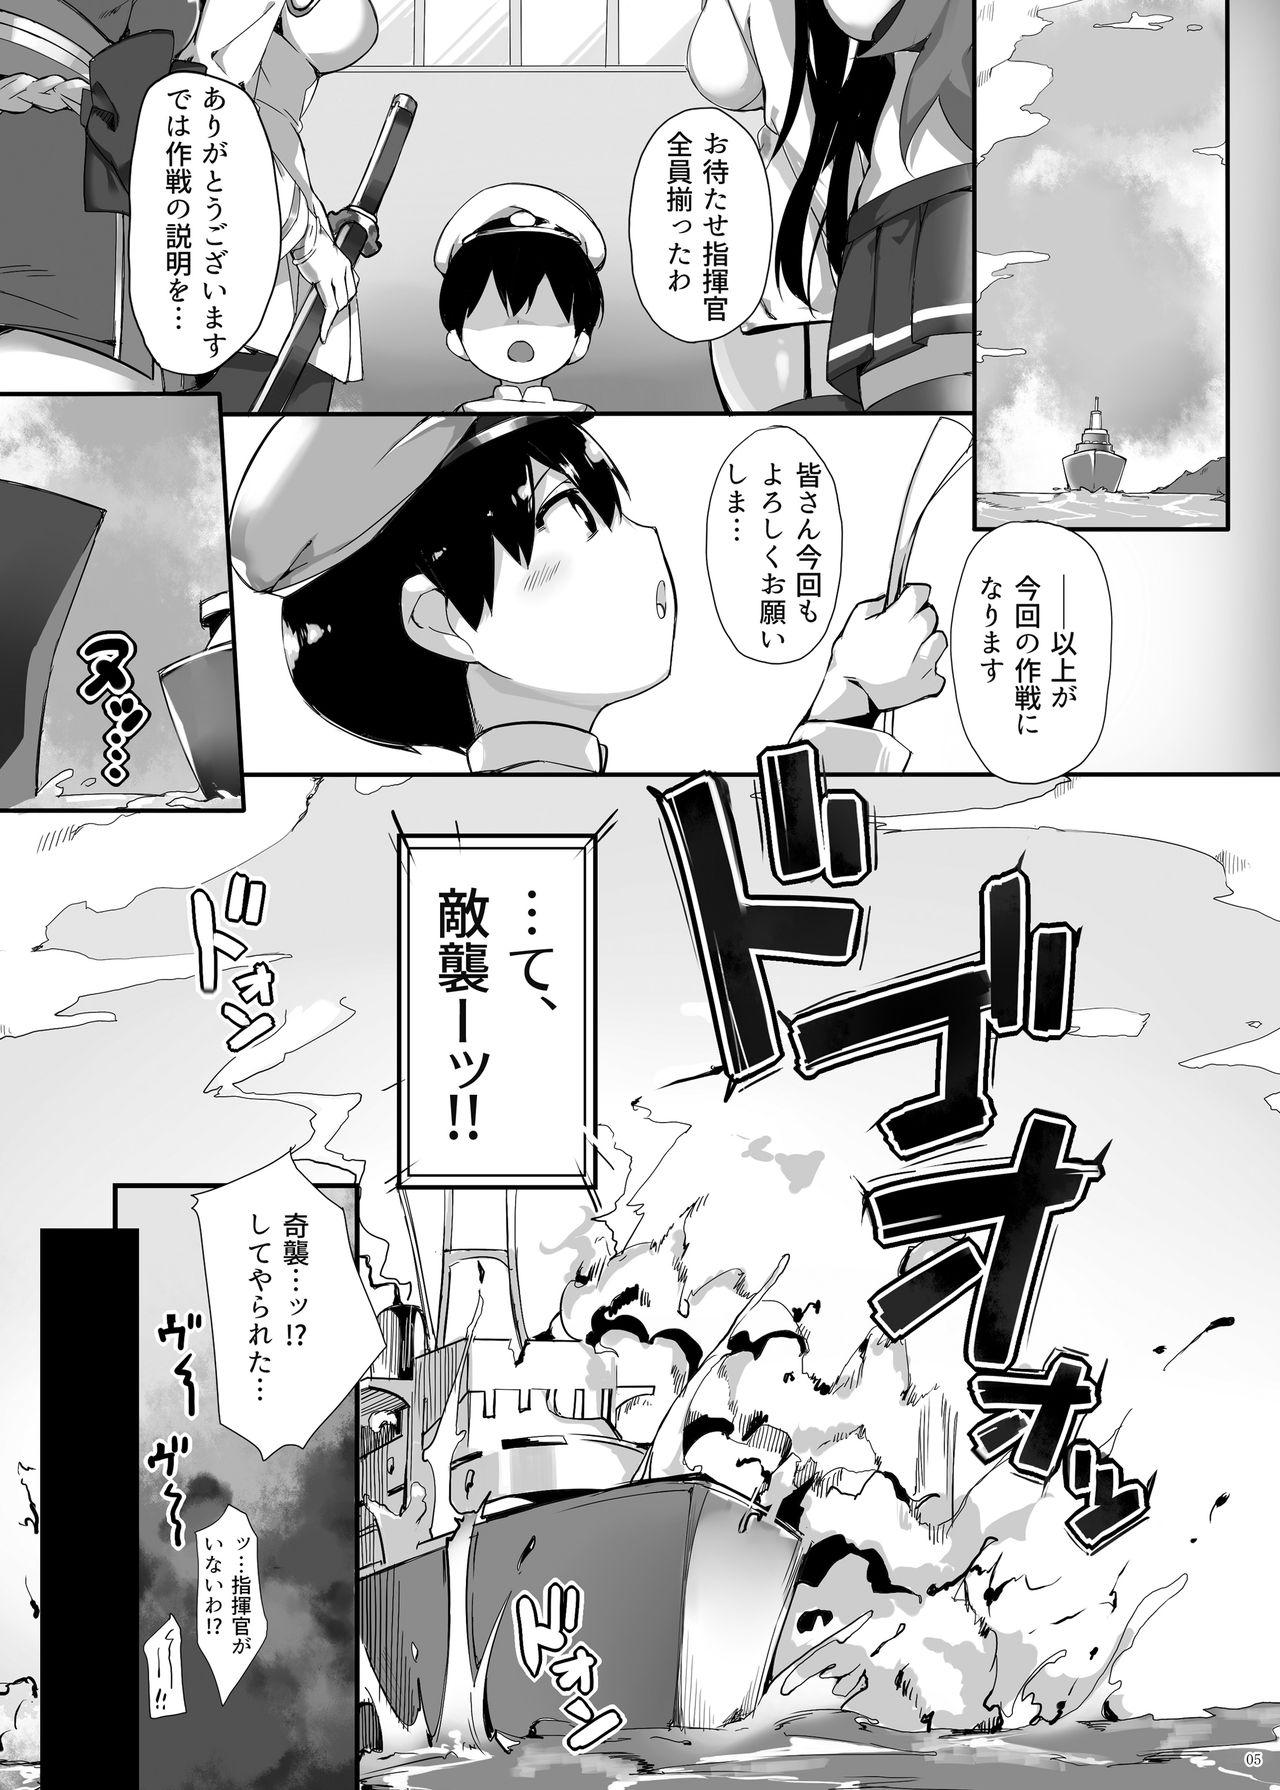 Bribe Hipper Shimai no Shota Sakusei Jinmon - Azur lane Parties - Page 5